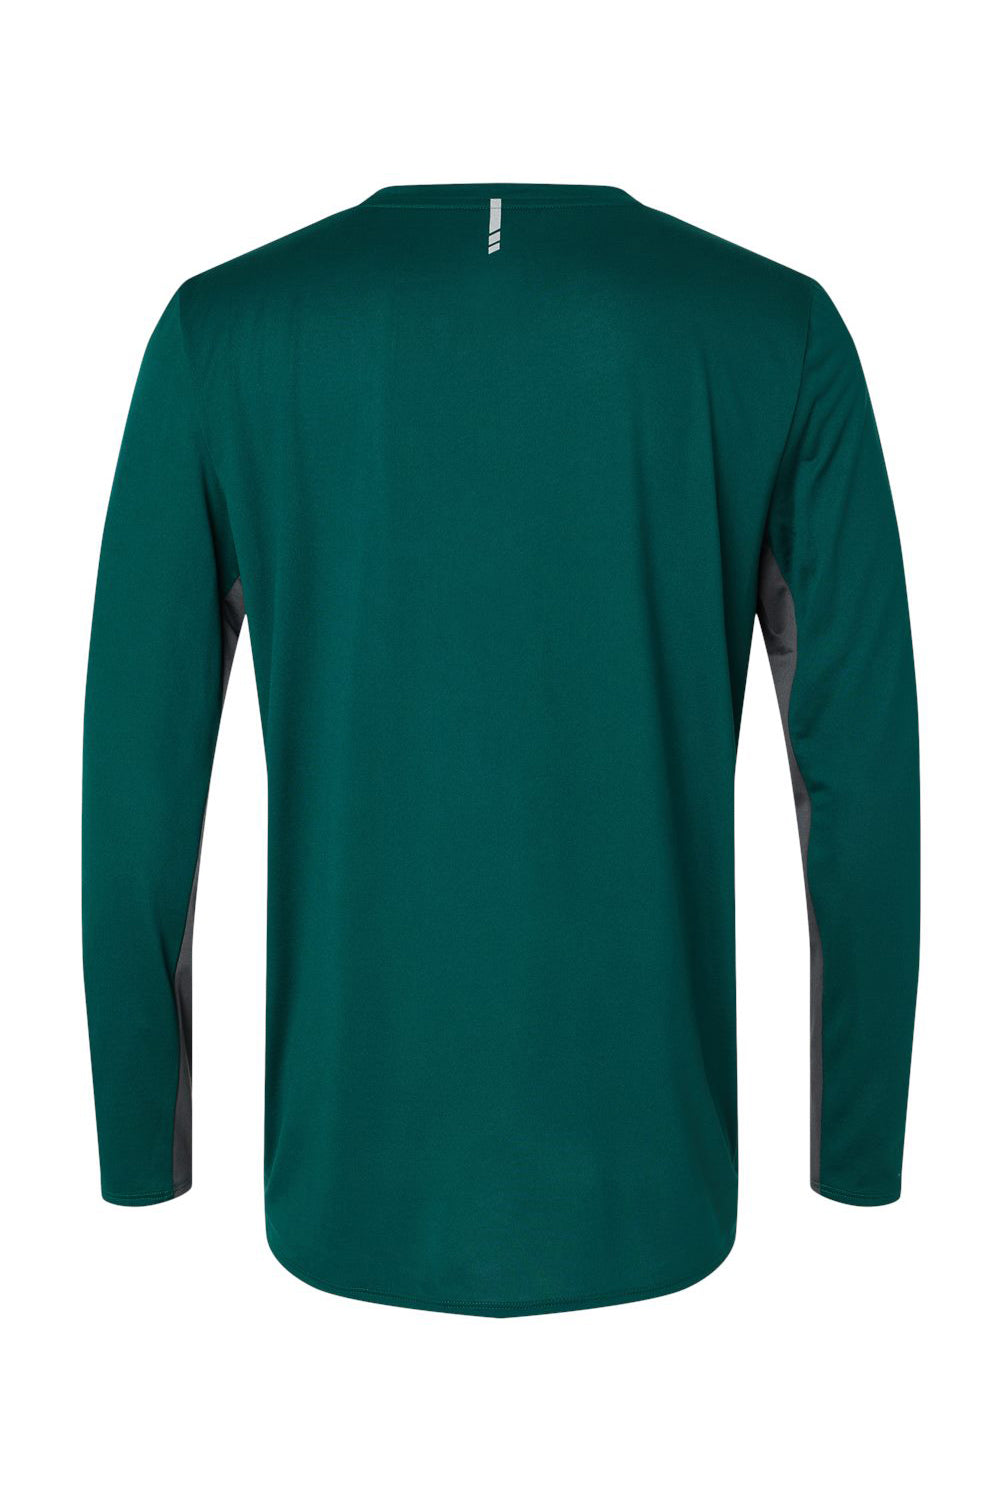 Oakley FOA402992 Mens Team Issue Hydrolix Long Sleeve Crewneck T-Shirt Team Fir Green Flat Back